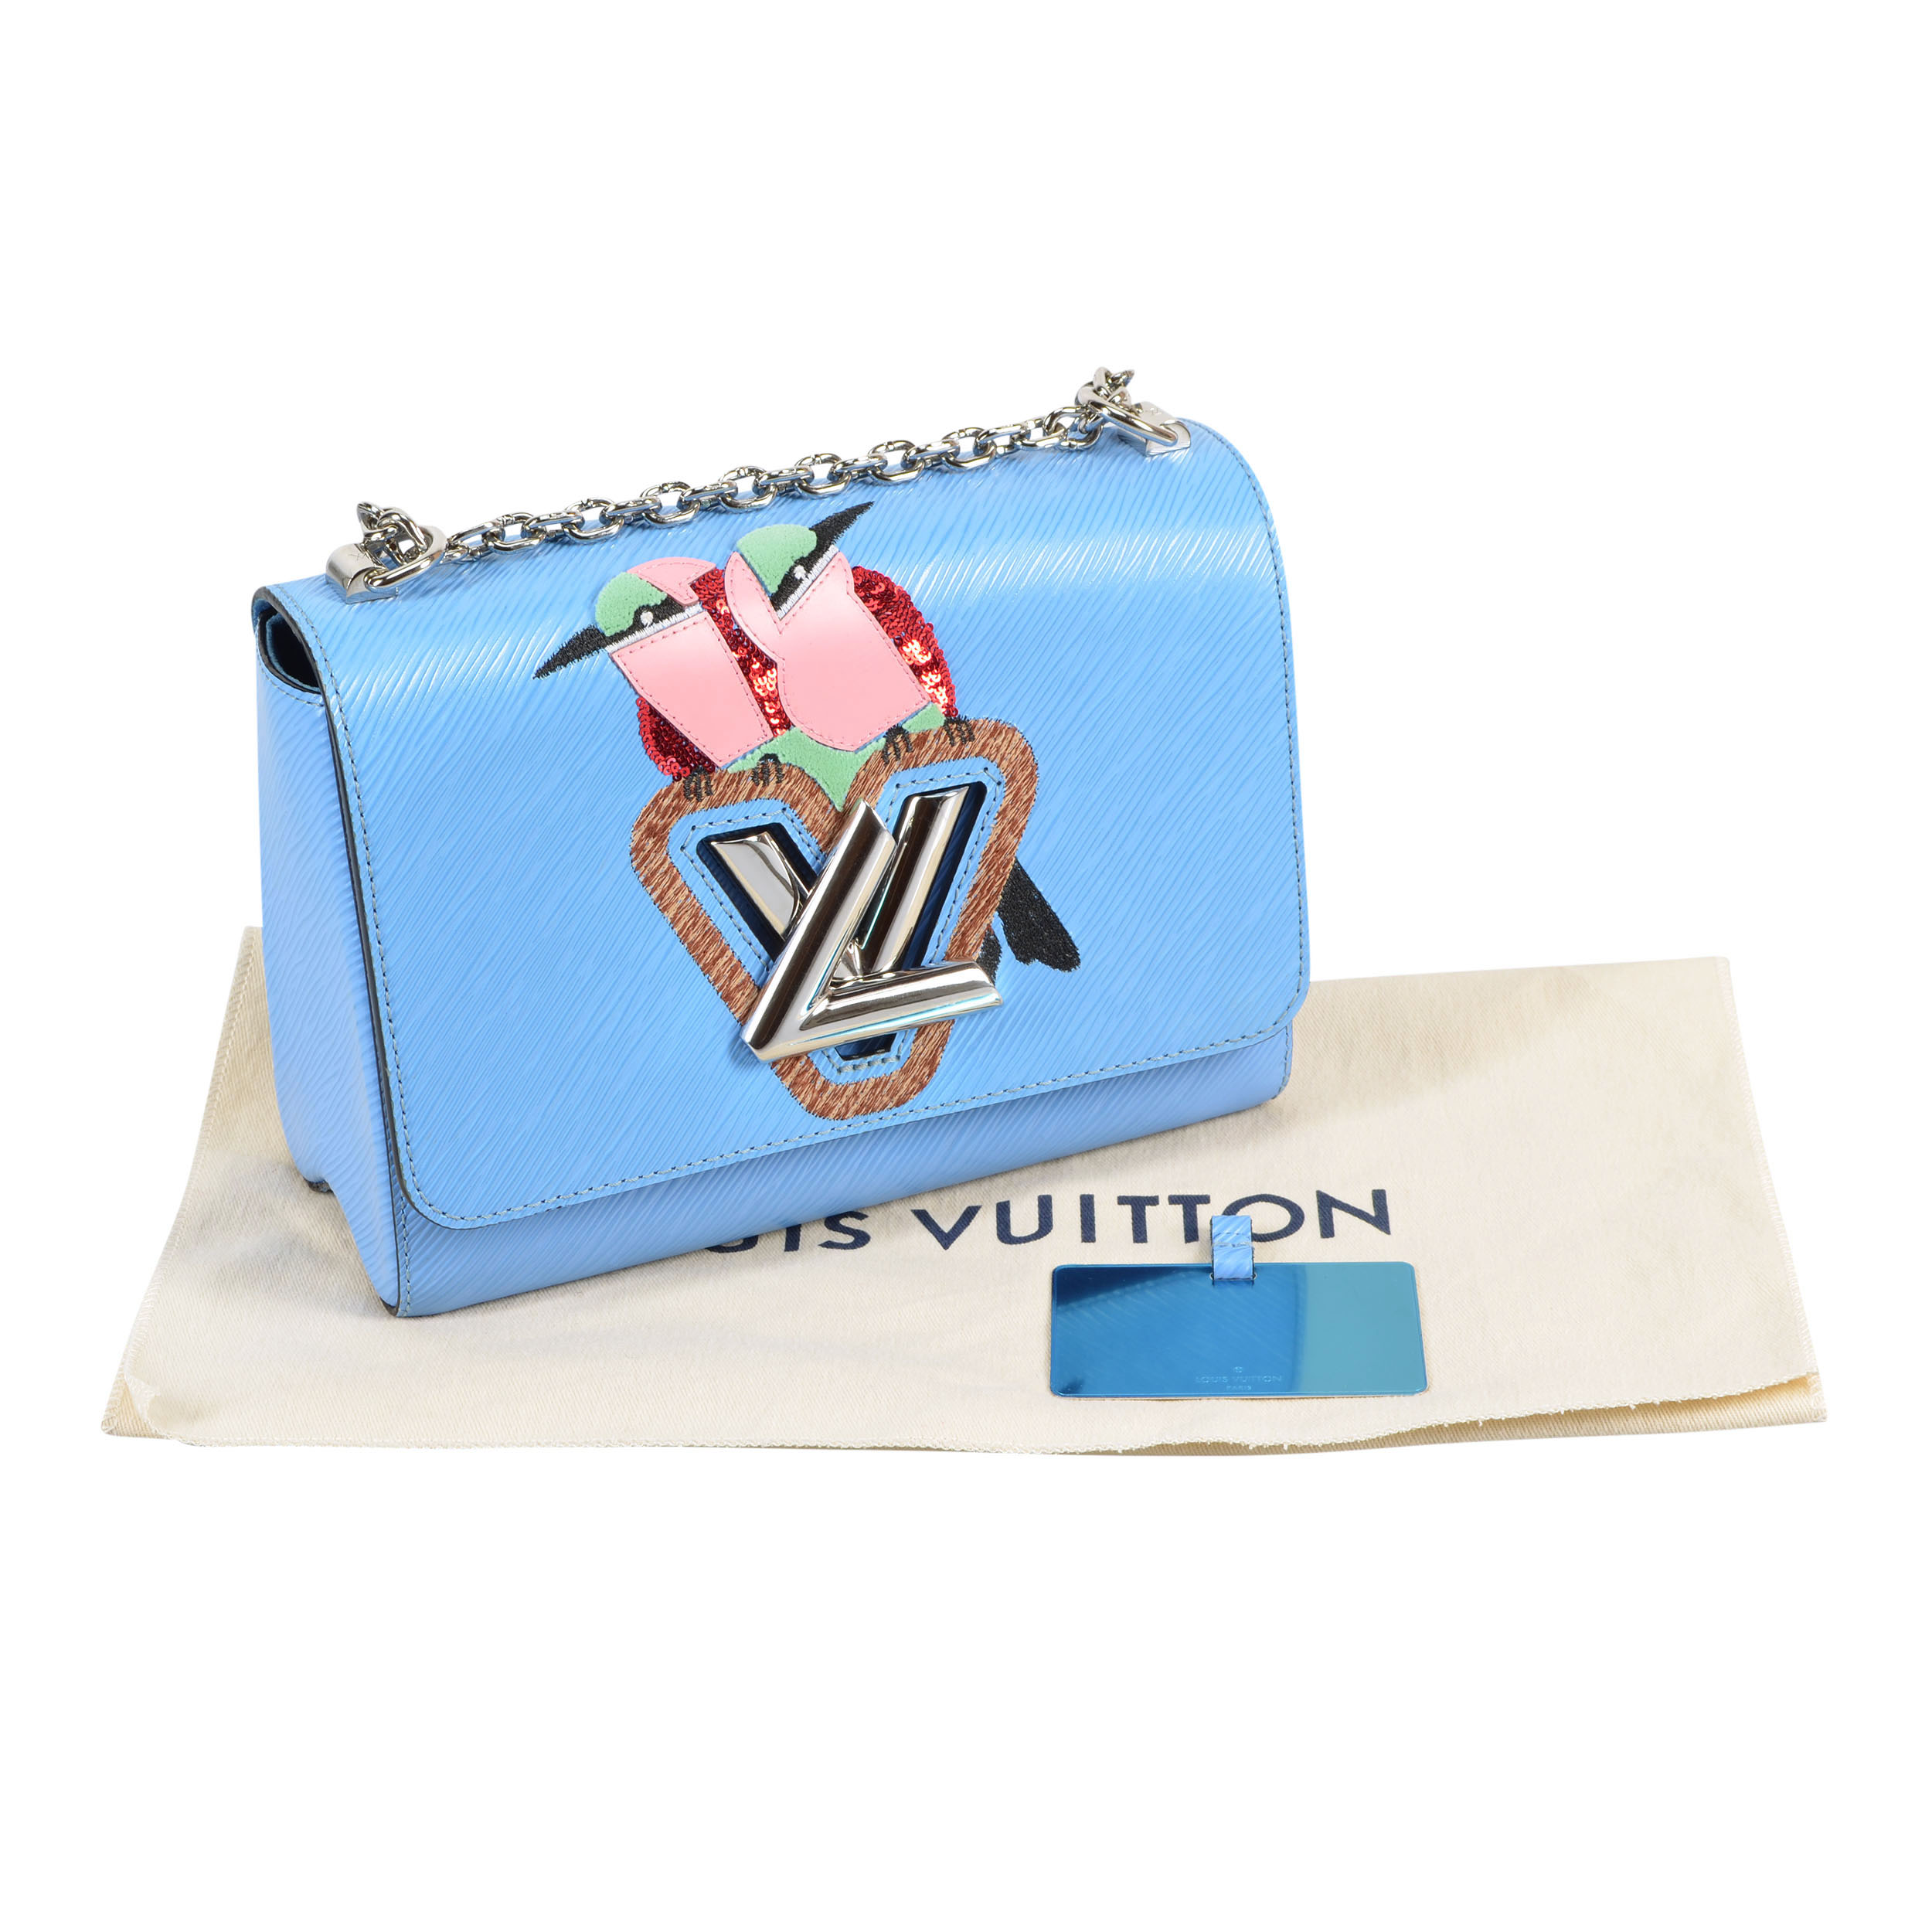 Louis Vuitton Taschen aus Leder - Blau - 31982707